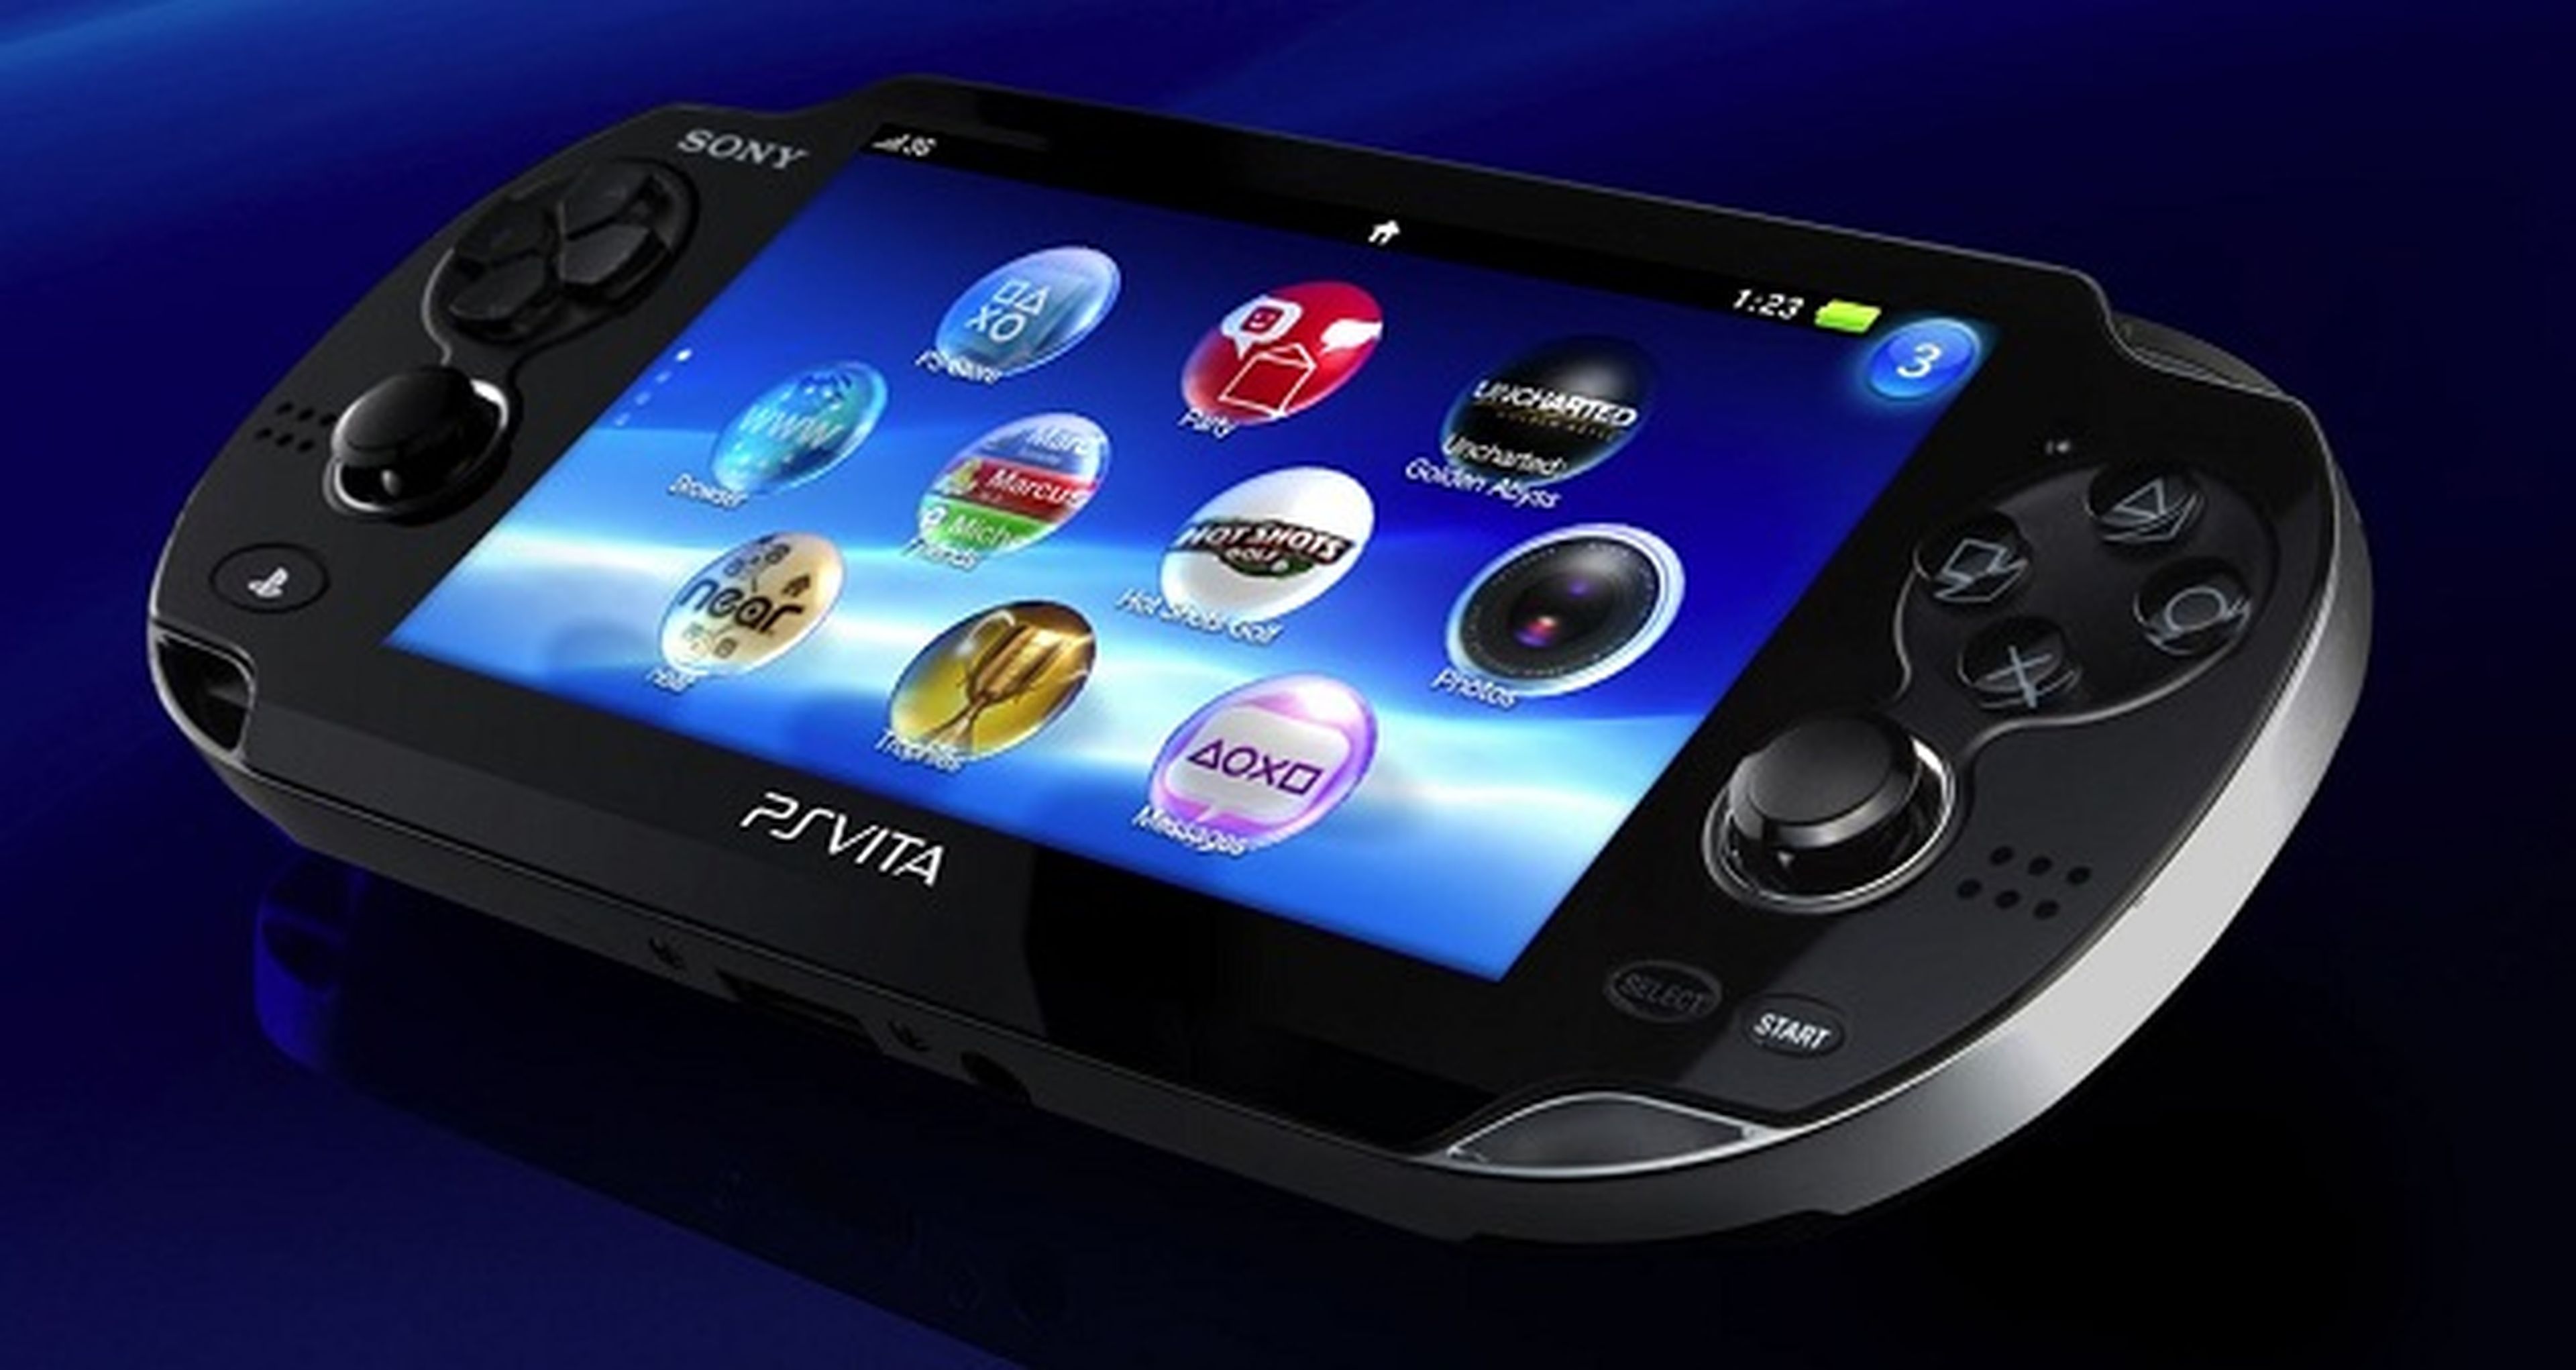 Anunciado un pack de PlayStation Vita con cinco juegos de acción